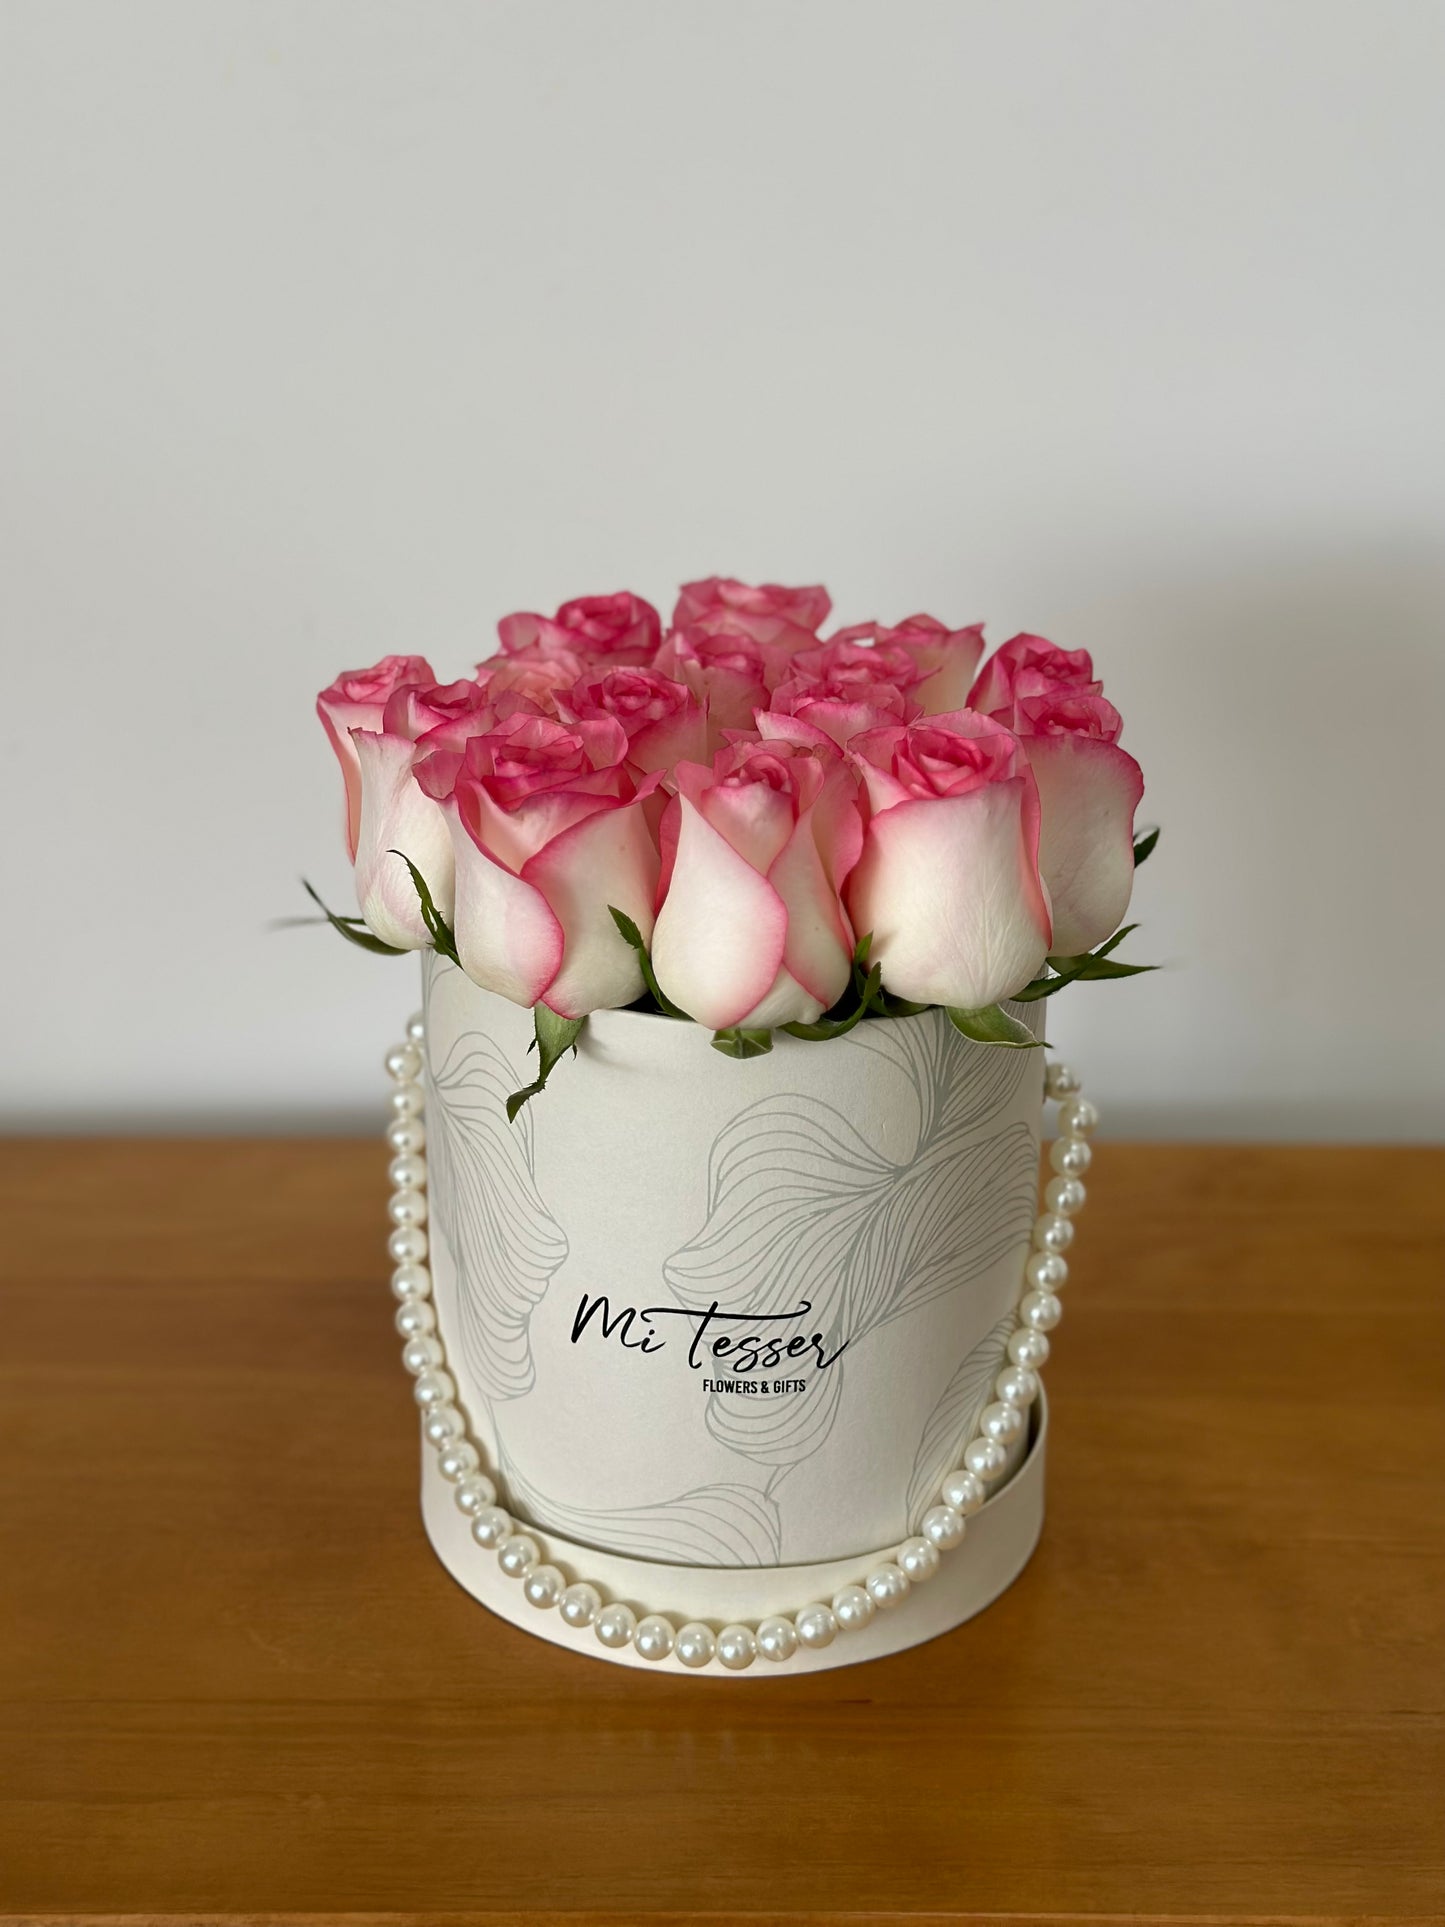 Flower box com rosas saindo da caixa